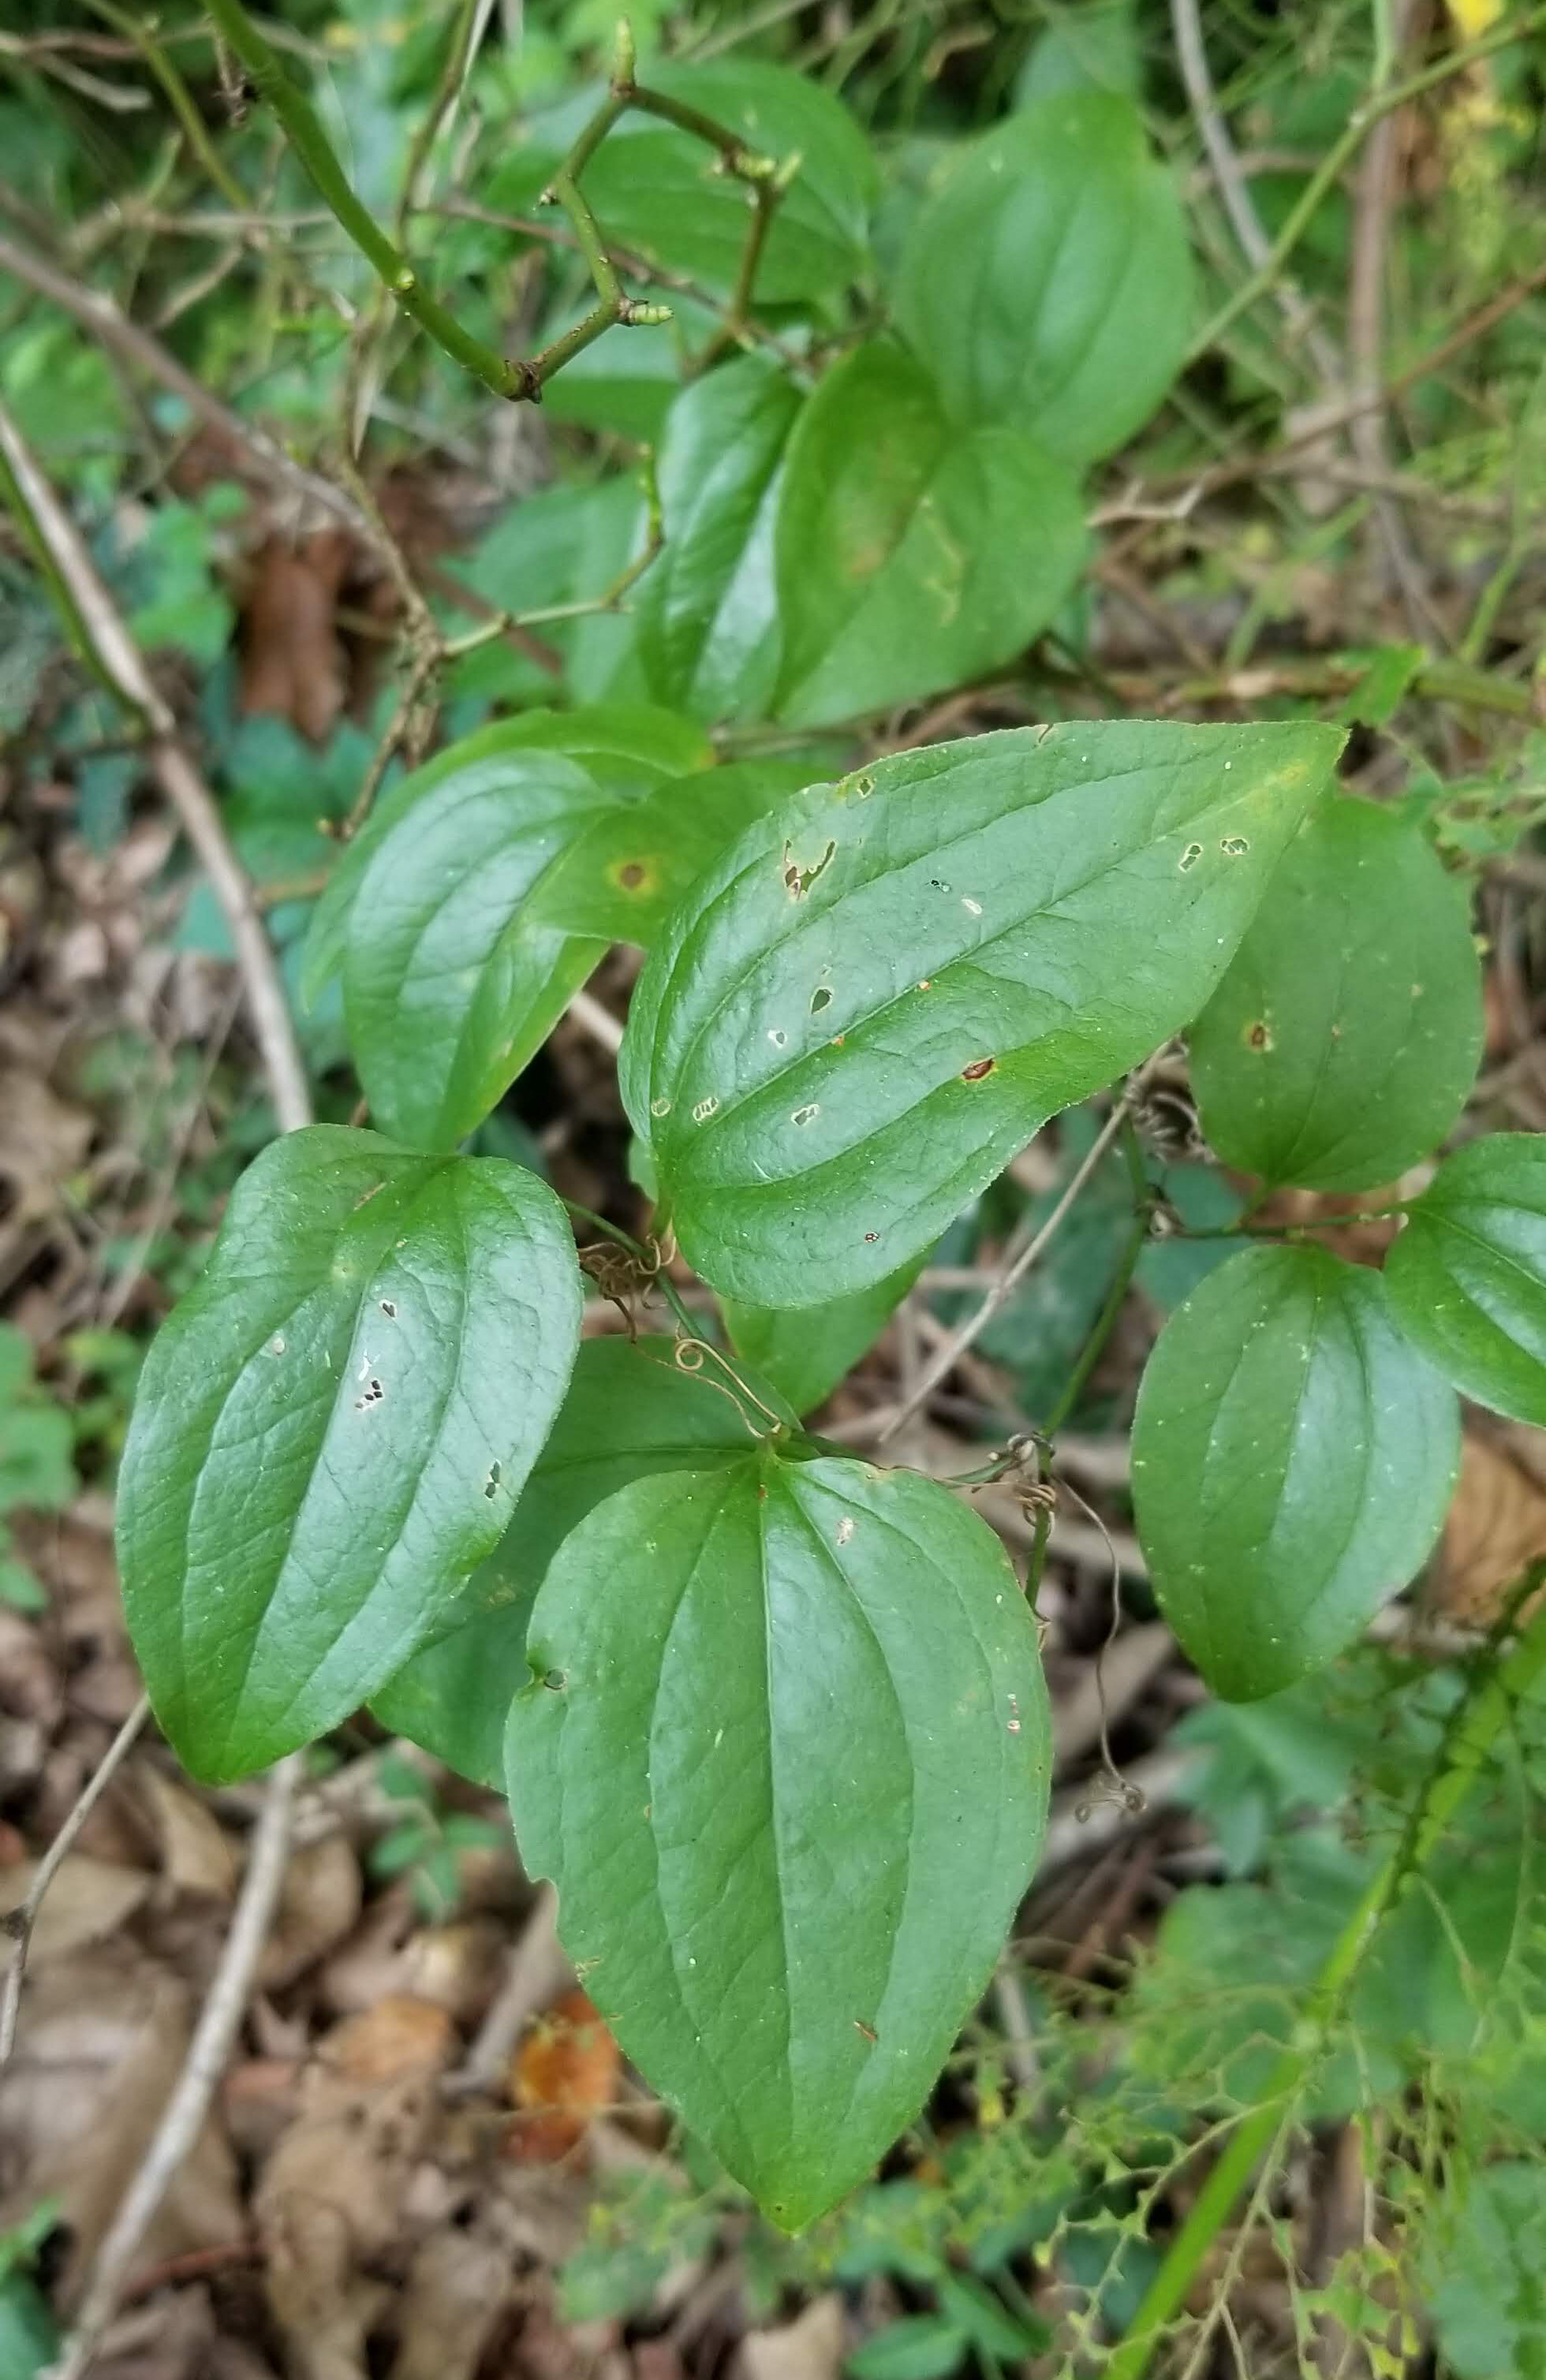 Native look-a-like, greenbriar leaves